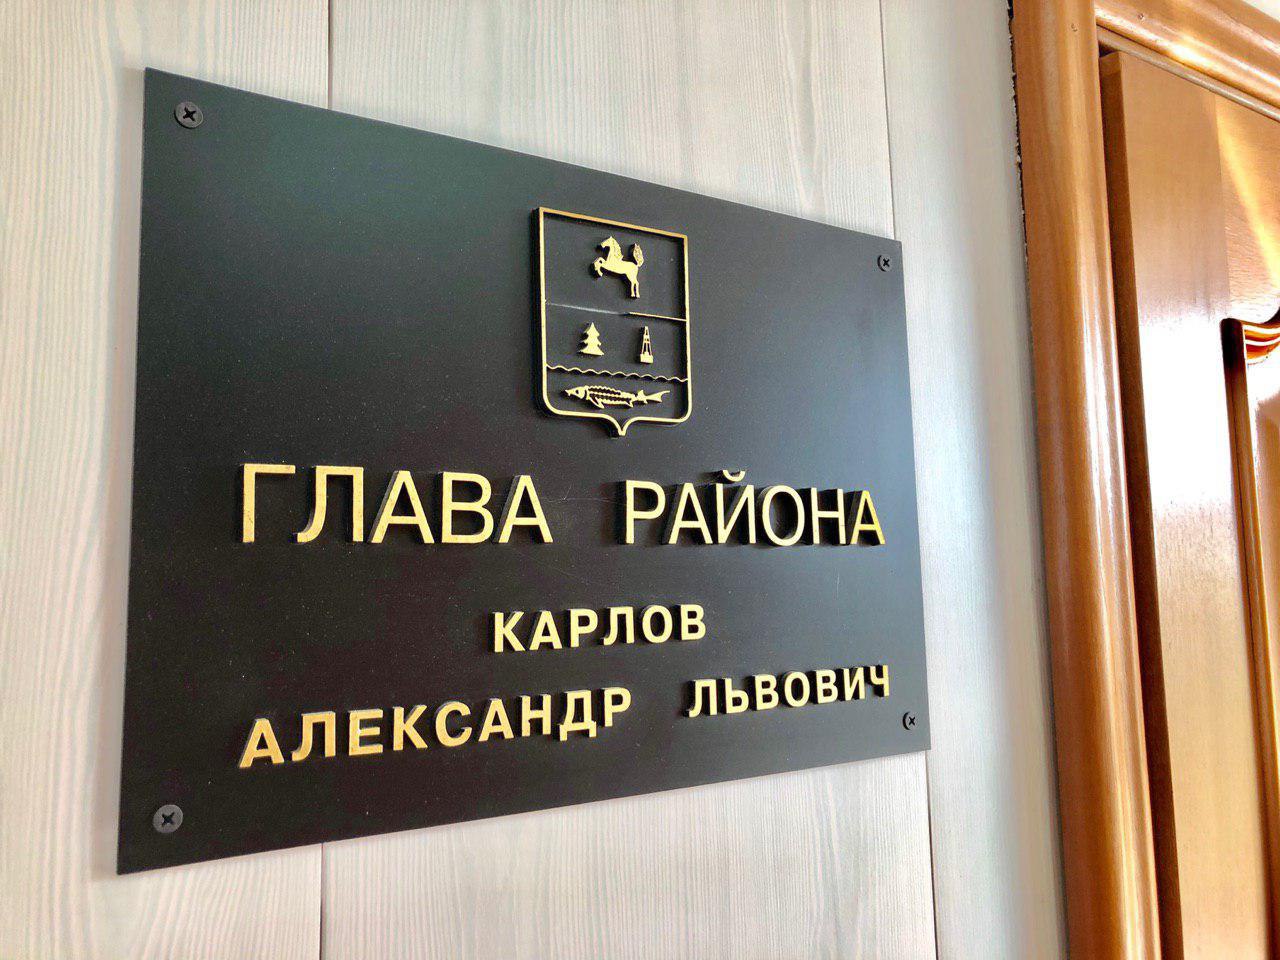 Сегодня аппаратное совещание прошло под руководством главы района Александра Карлова.